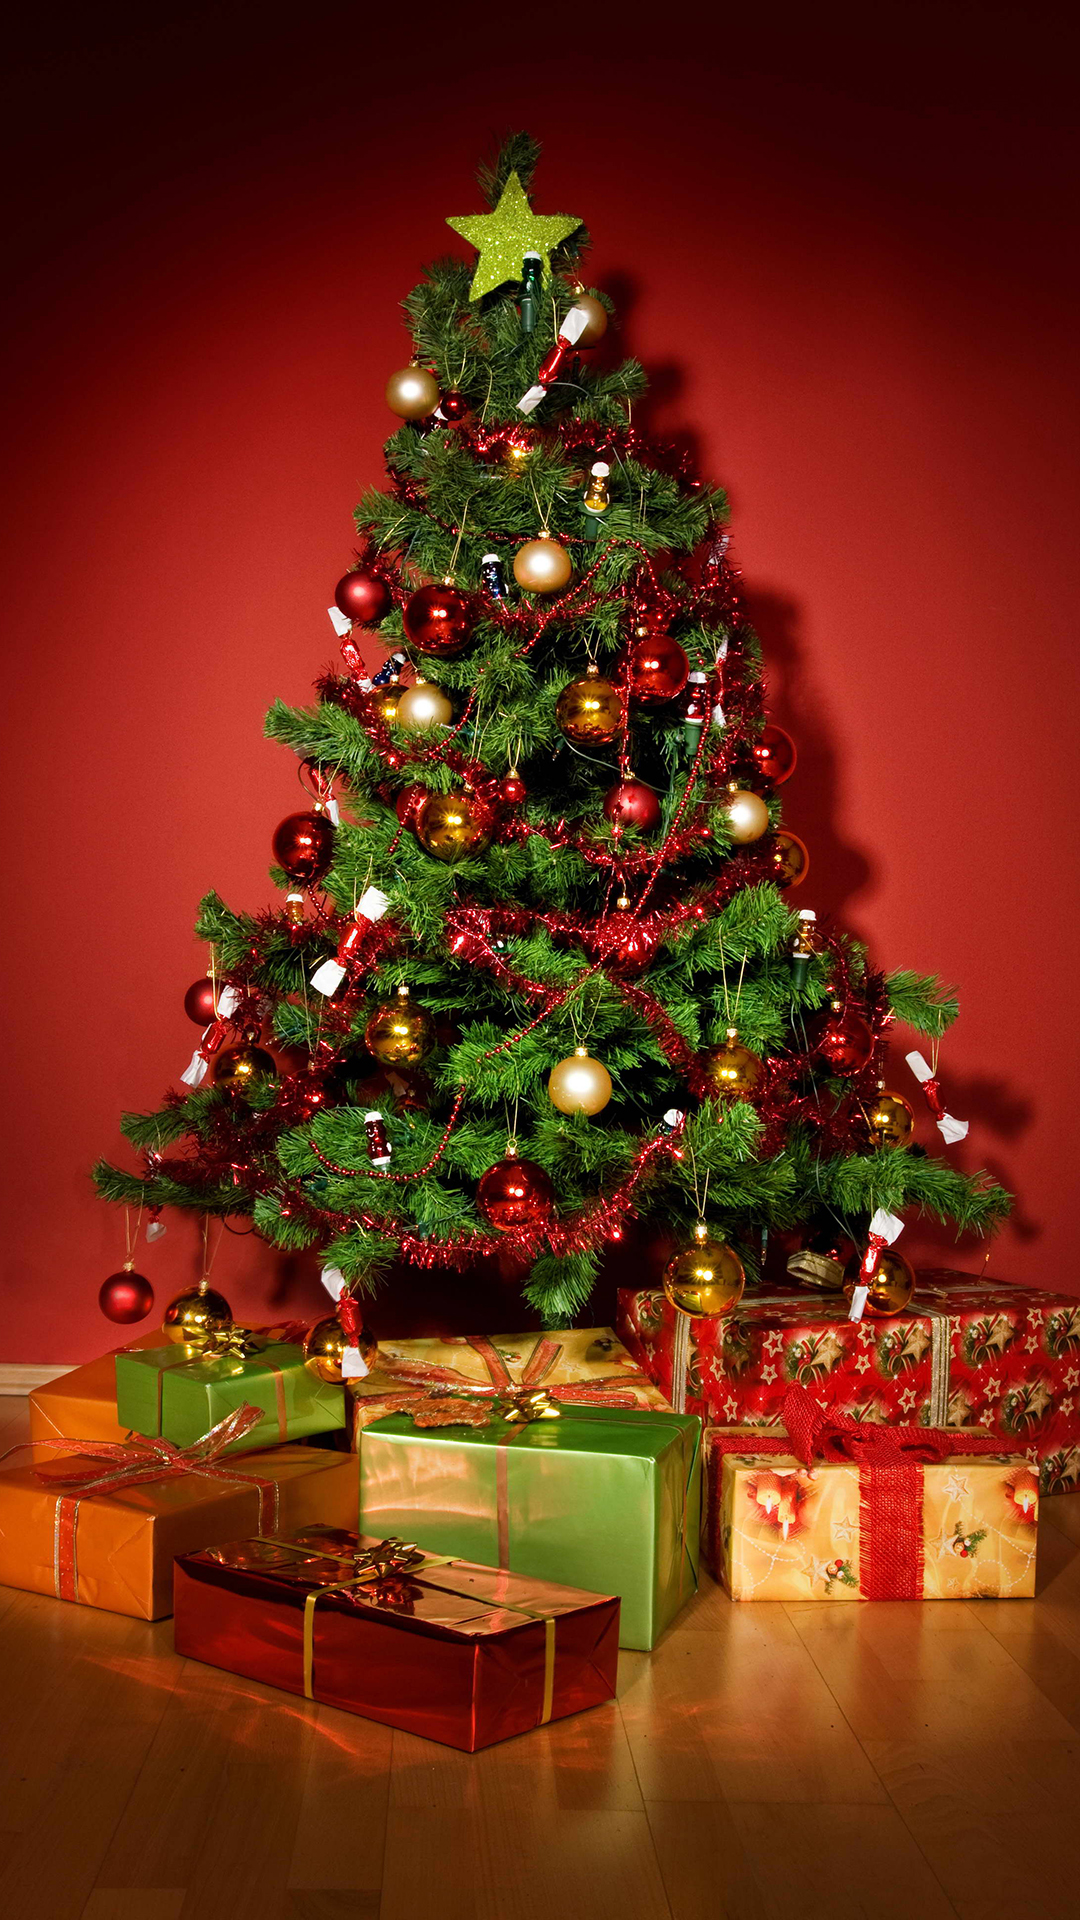 クリスマスツリーの壁紙,クリスマスツリー,クリスマスの飾り,クリスマス,木,クリスマスオーナメント